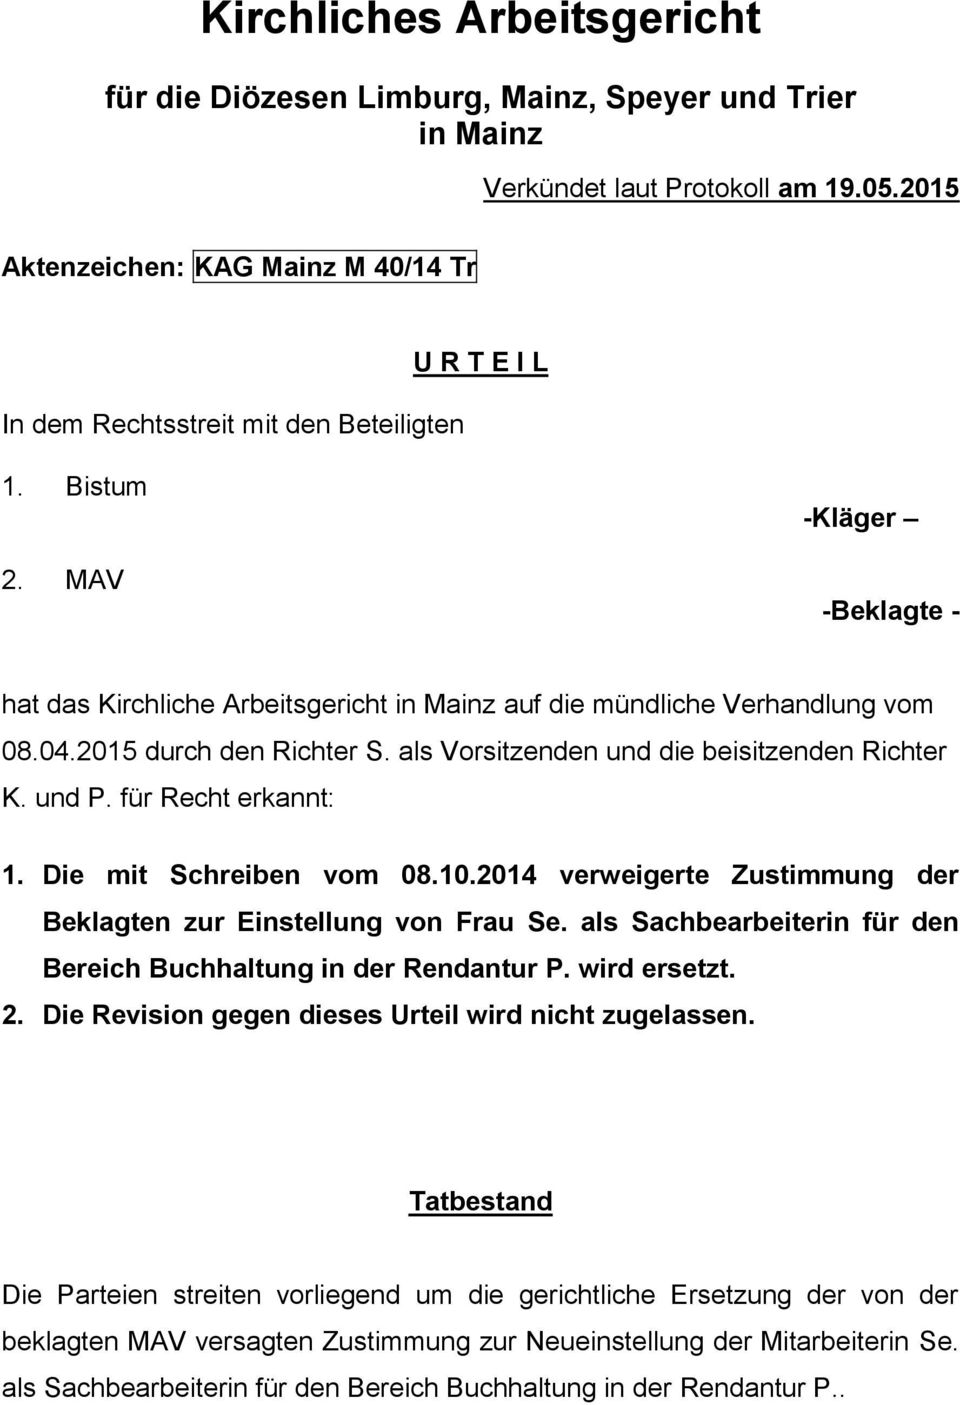 MAV -Kläger -Beklagte - hat das Kirchliche Arbeitsgericht in Mainz auf die mündliche Verhandlung vom 08.04.2015 durch den Richter S. als Vorsitzenden und die beisitzenden Richter K. und P.